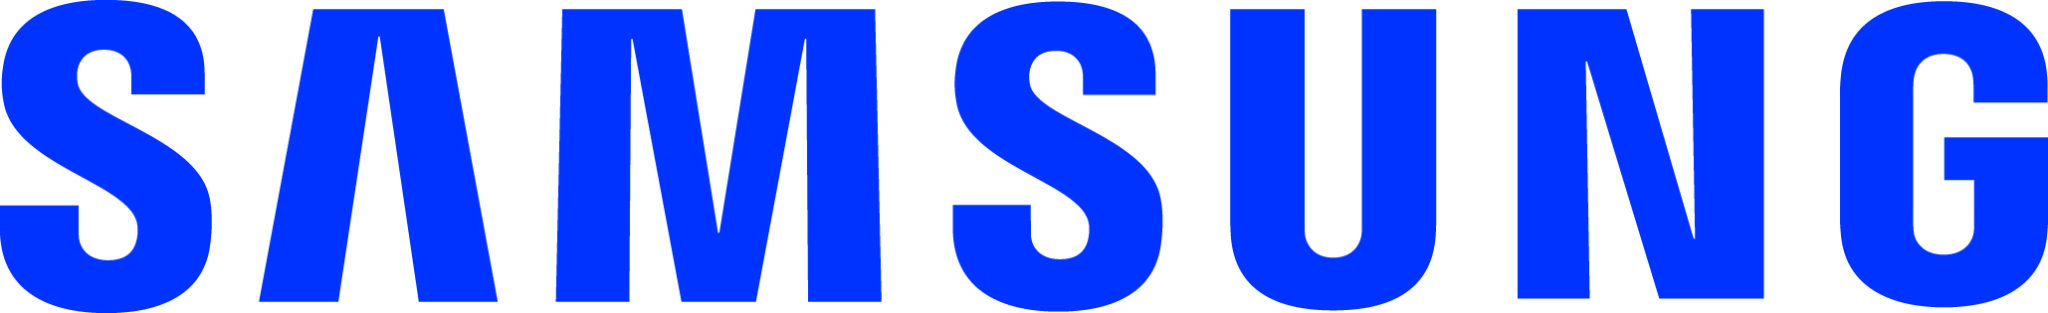 samsung lettermark